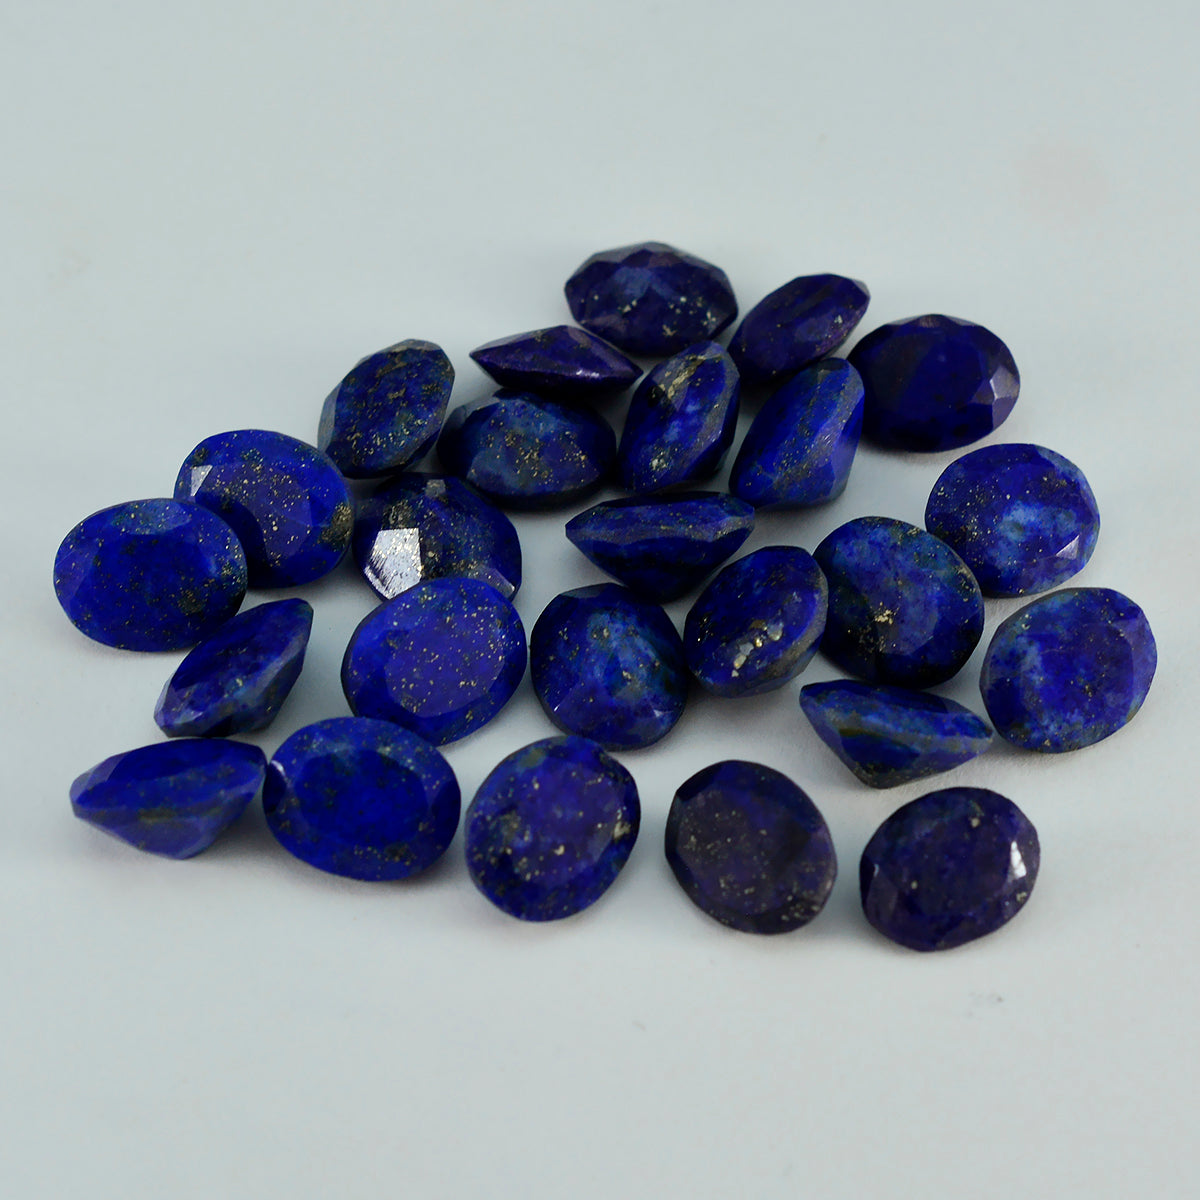 Riyogems 1PC Echte Blauwe Lapis Lazuli Facet 10x12 mm Ovale Vorm verbazingwekkende Kwaliteit Losse Steen